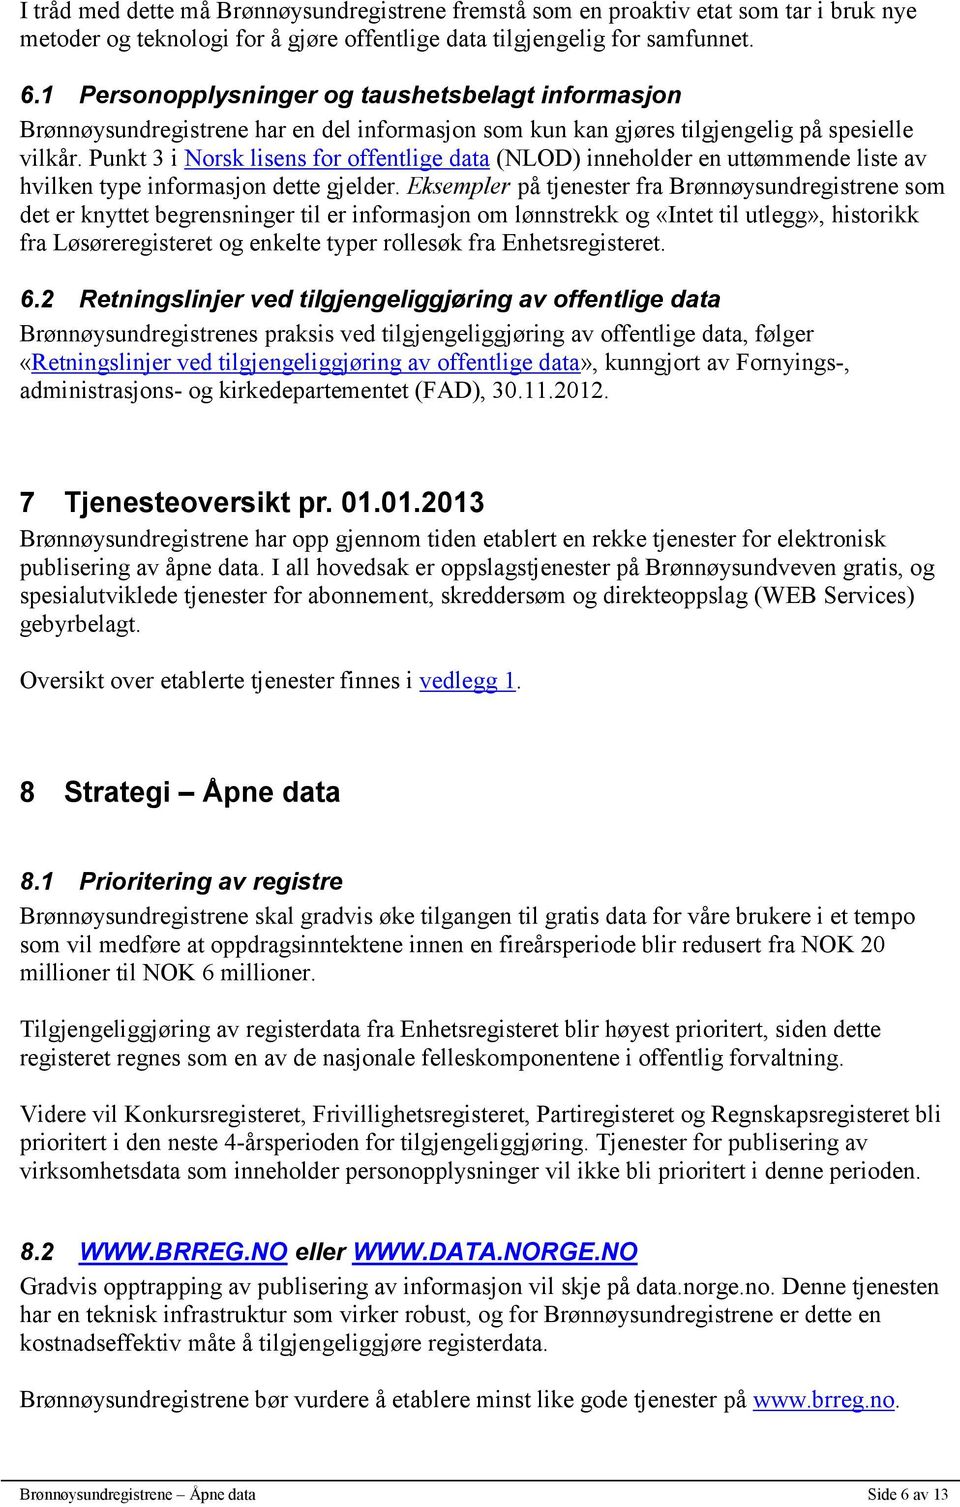 Punkt 3 i Norsk lisens for offentlige data (NLOD) inneholder en uttømmende liste av hvilken type informasjon dette gjelder.